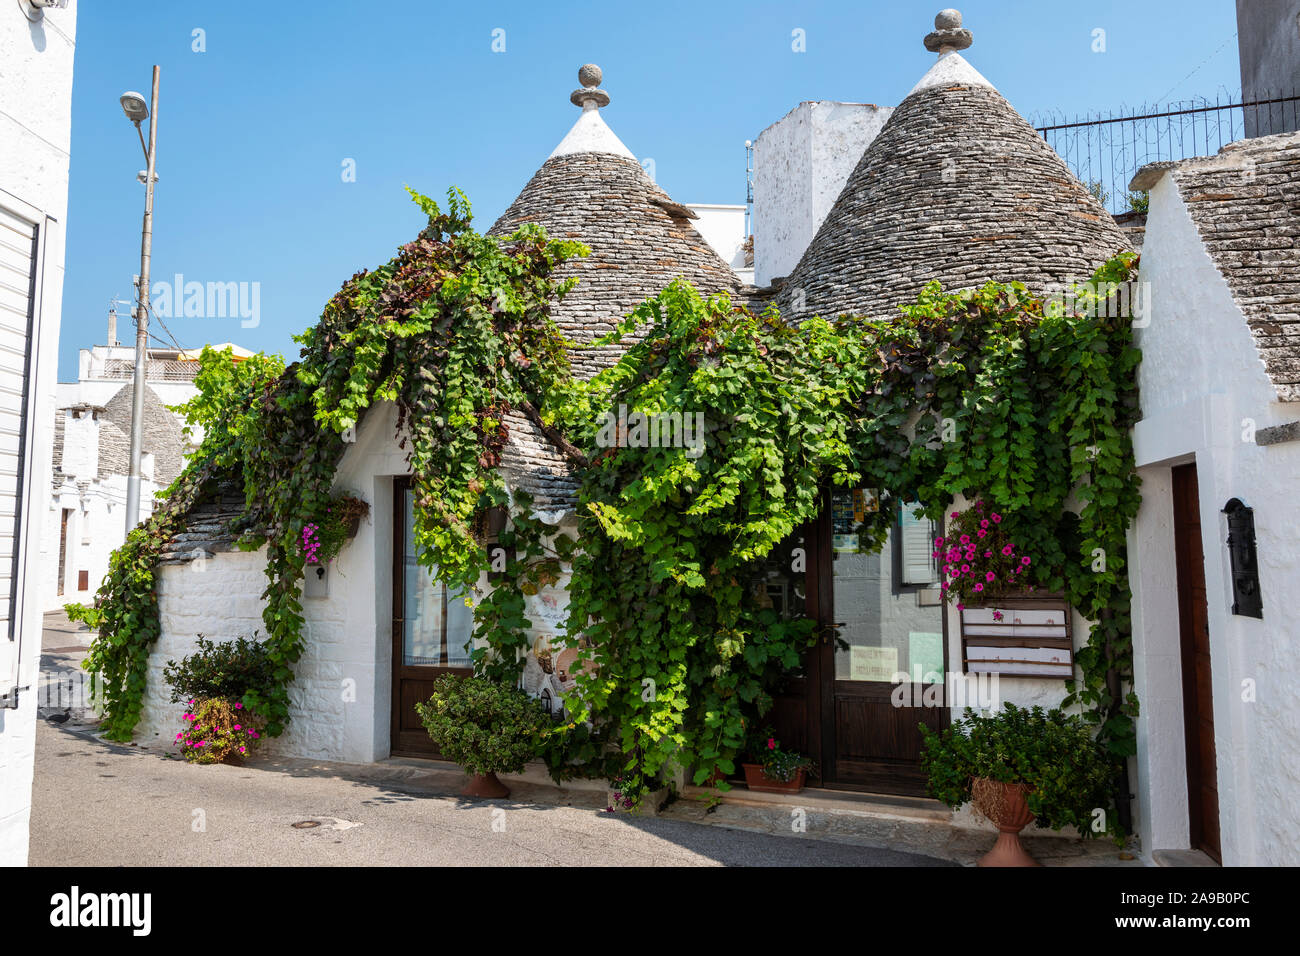 Giardino dei Trulli Guest House on Via XXIV Maggio in Alberobello in Apulia (Puglia), Southern Italy Stock Photo